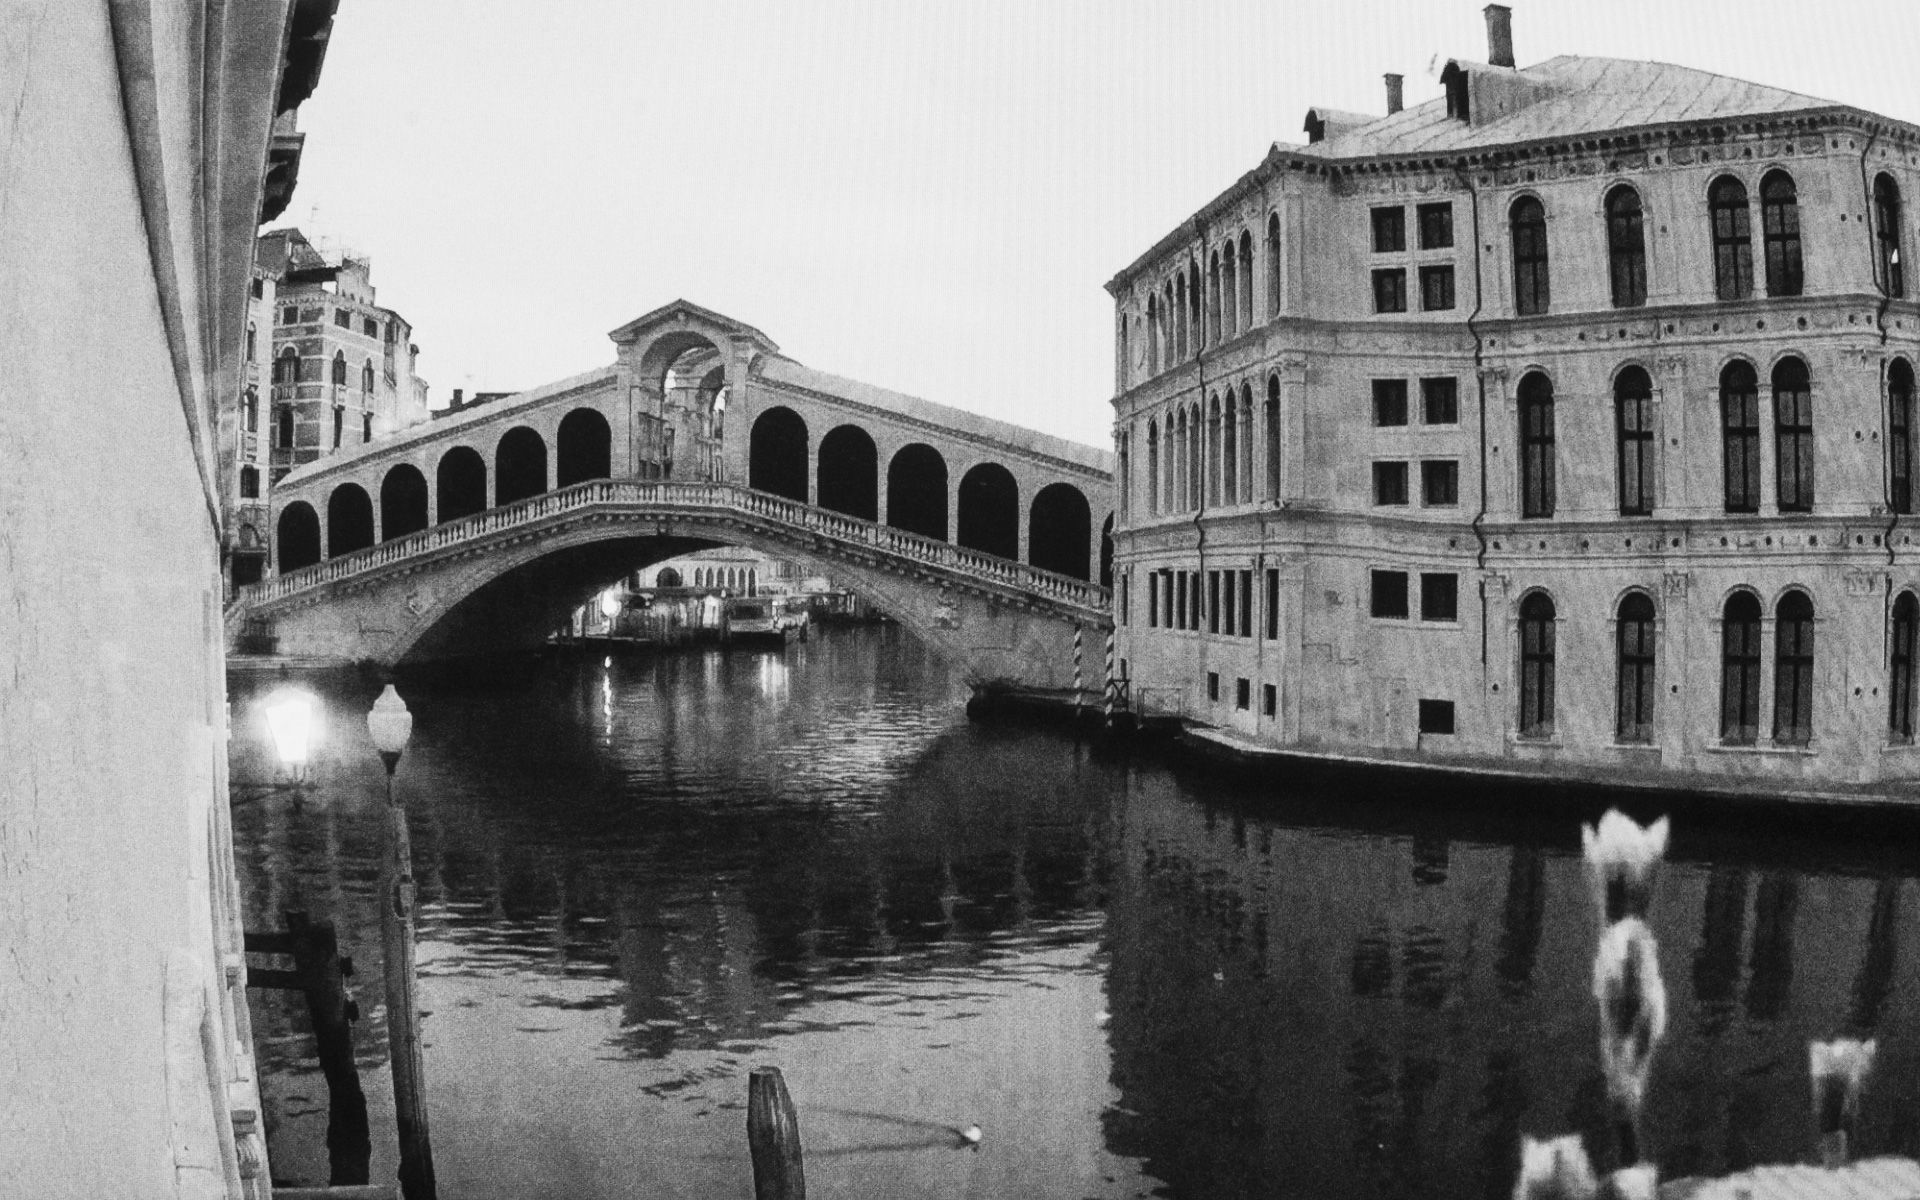 Venice, Ponte Rialto - A swimming seagull on the quiet Grand Channel in the front of the famous Rialto Bridge. Venice, March 27. 2020.